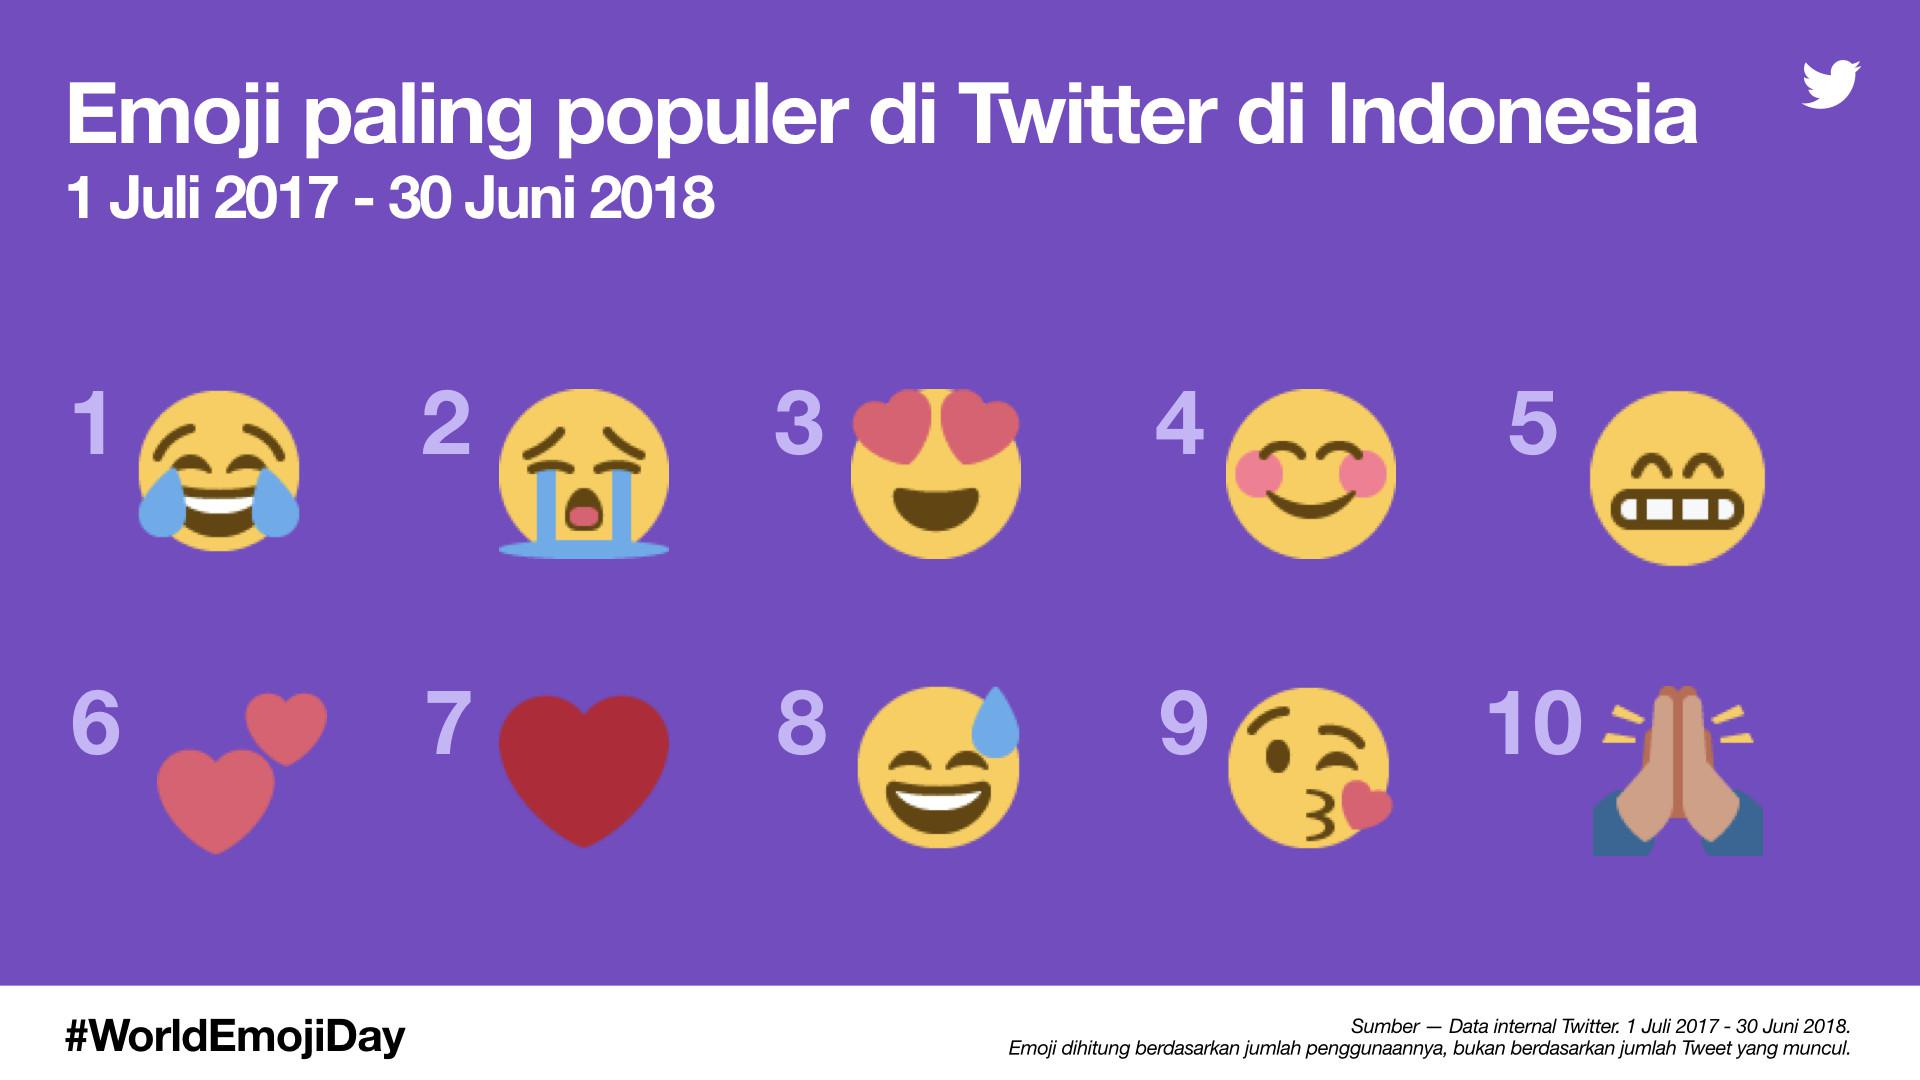 Ini Dia 10 Emoji Yang Paling Banyak Dipakai Warganet Indonesia